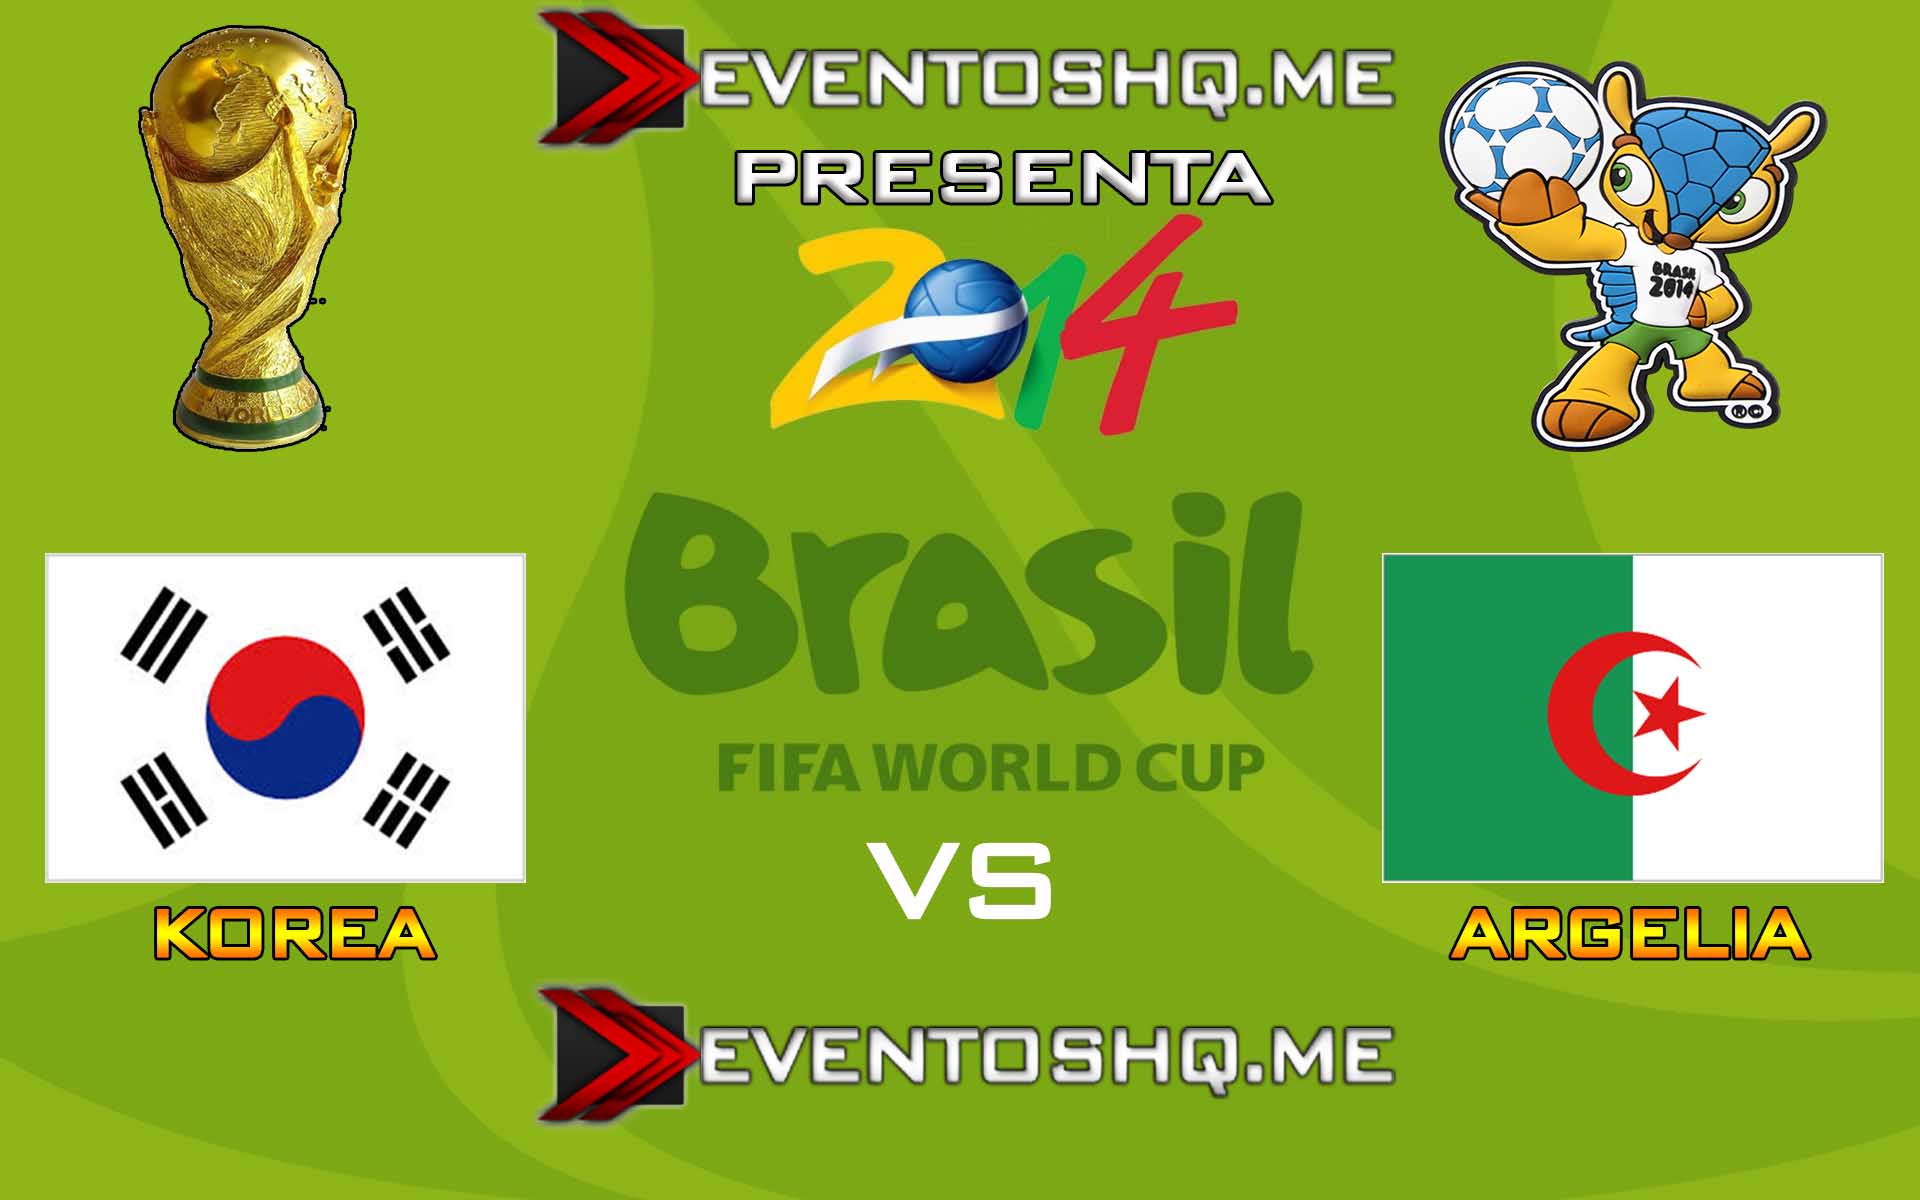 Ver en Vivo Korea vs Argelia Mundial Brasil 2014 www.eventoshq.me